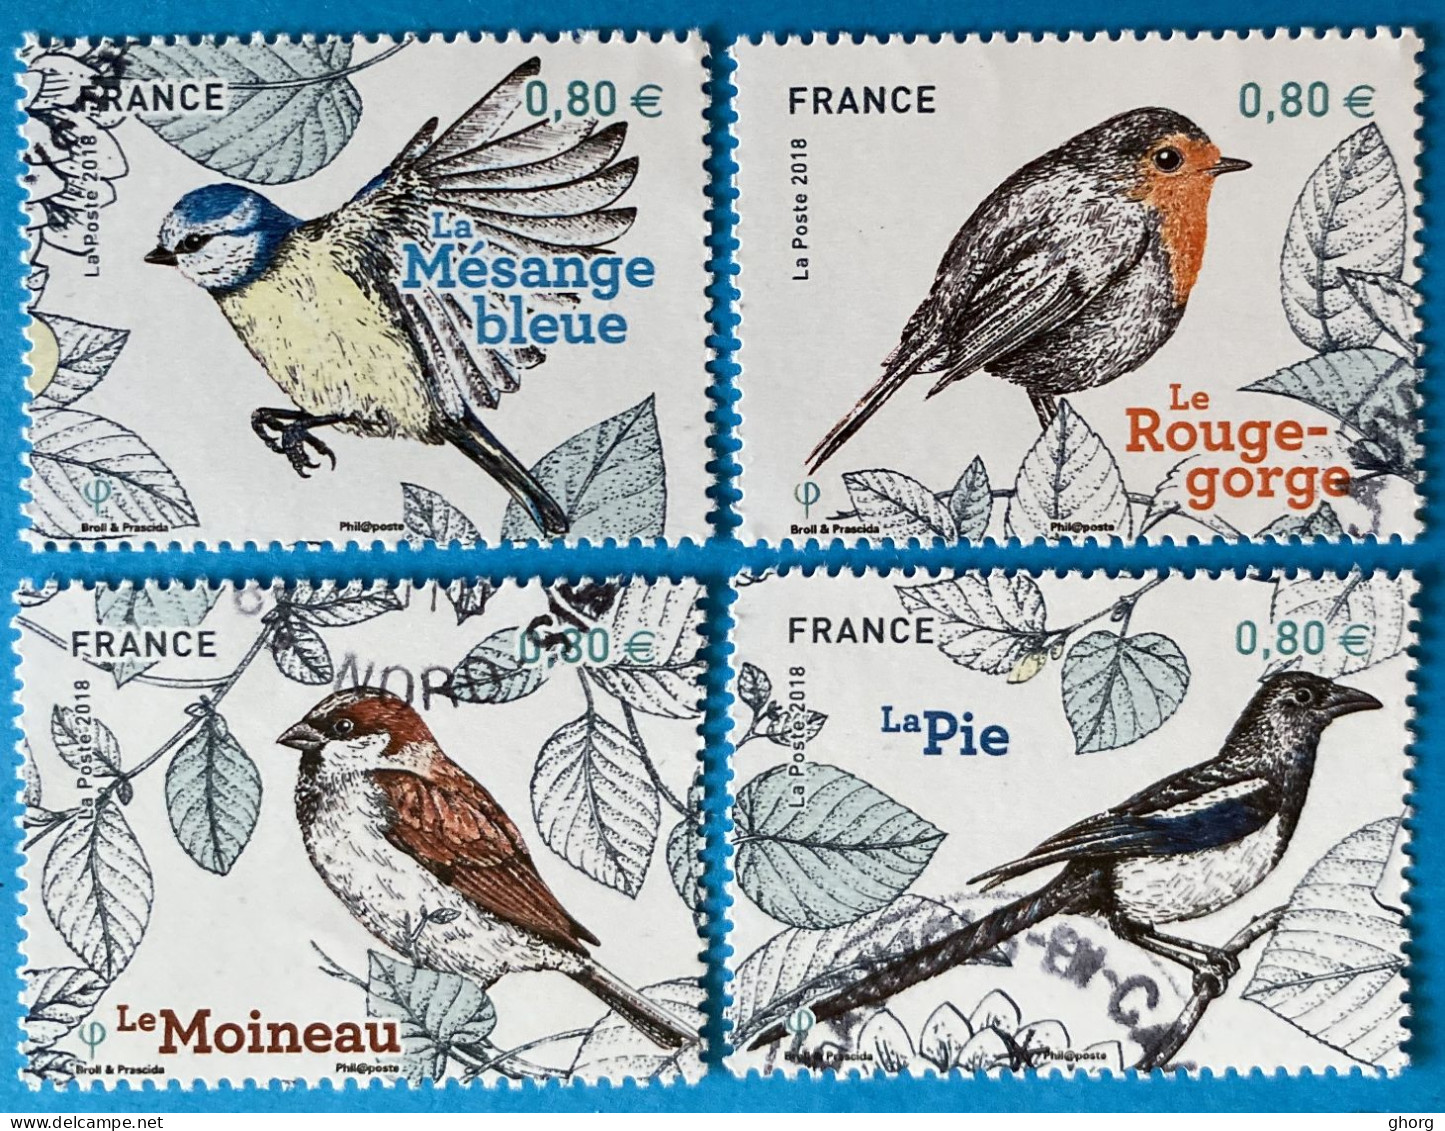 France 2018 : Nature De France, Faune, Oiseaux De Nos Jardins N° 5238 à 5241 Oblitérés - Used Stamps